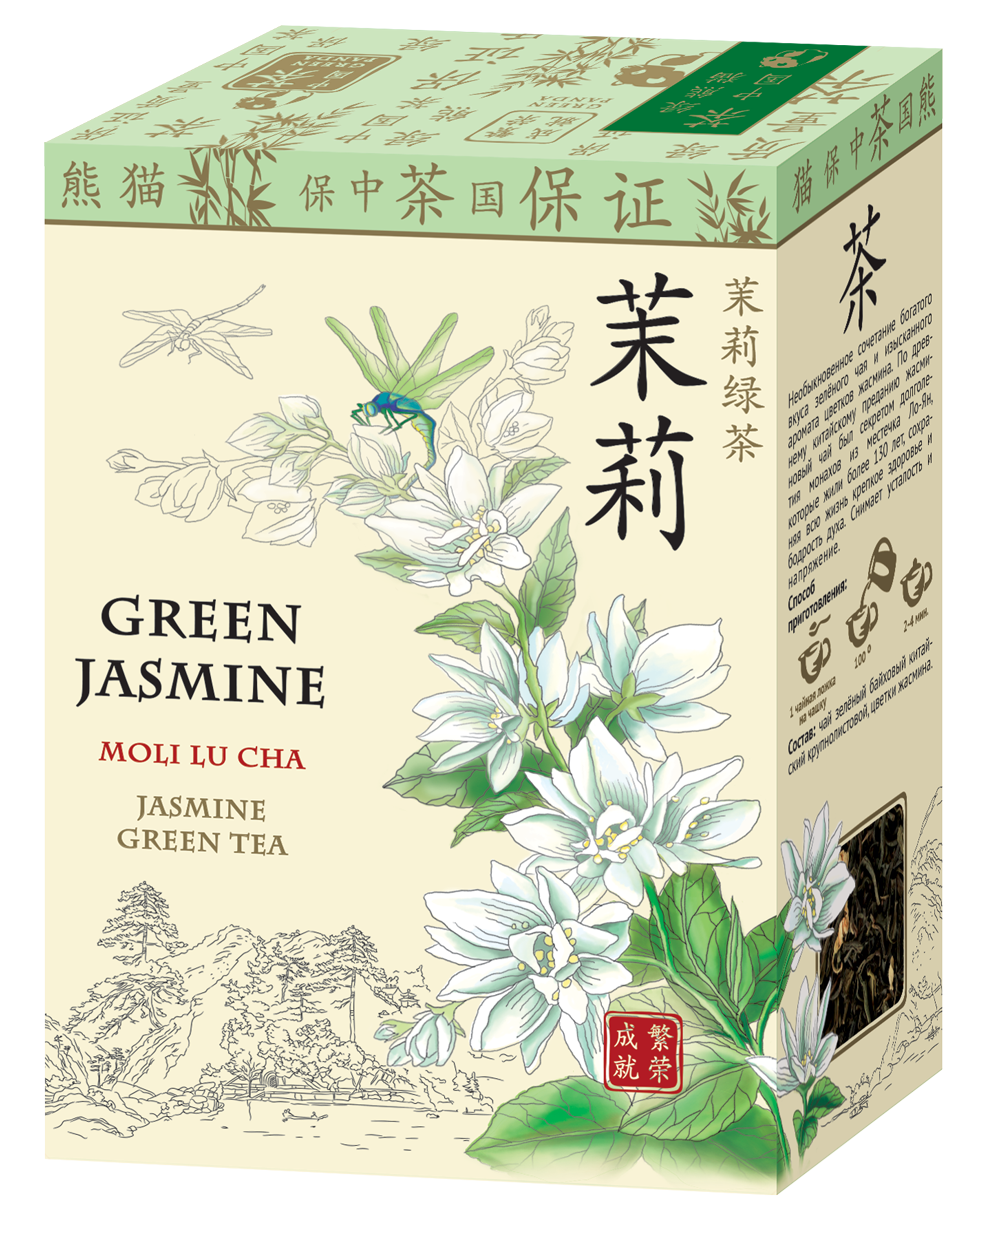 Жасминовый чай купить. Зеленый жасминовый чай китайский. Китайский зеленый чай с жасмином. Чай зелёный китайский ча Бао Люй ча 100г. Китайский чай с жасмином в зеленой упаковке.